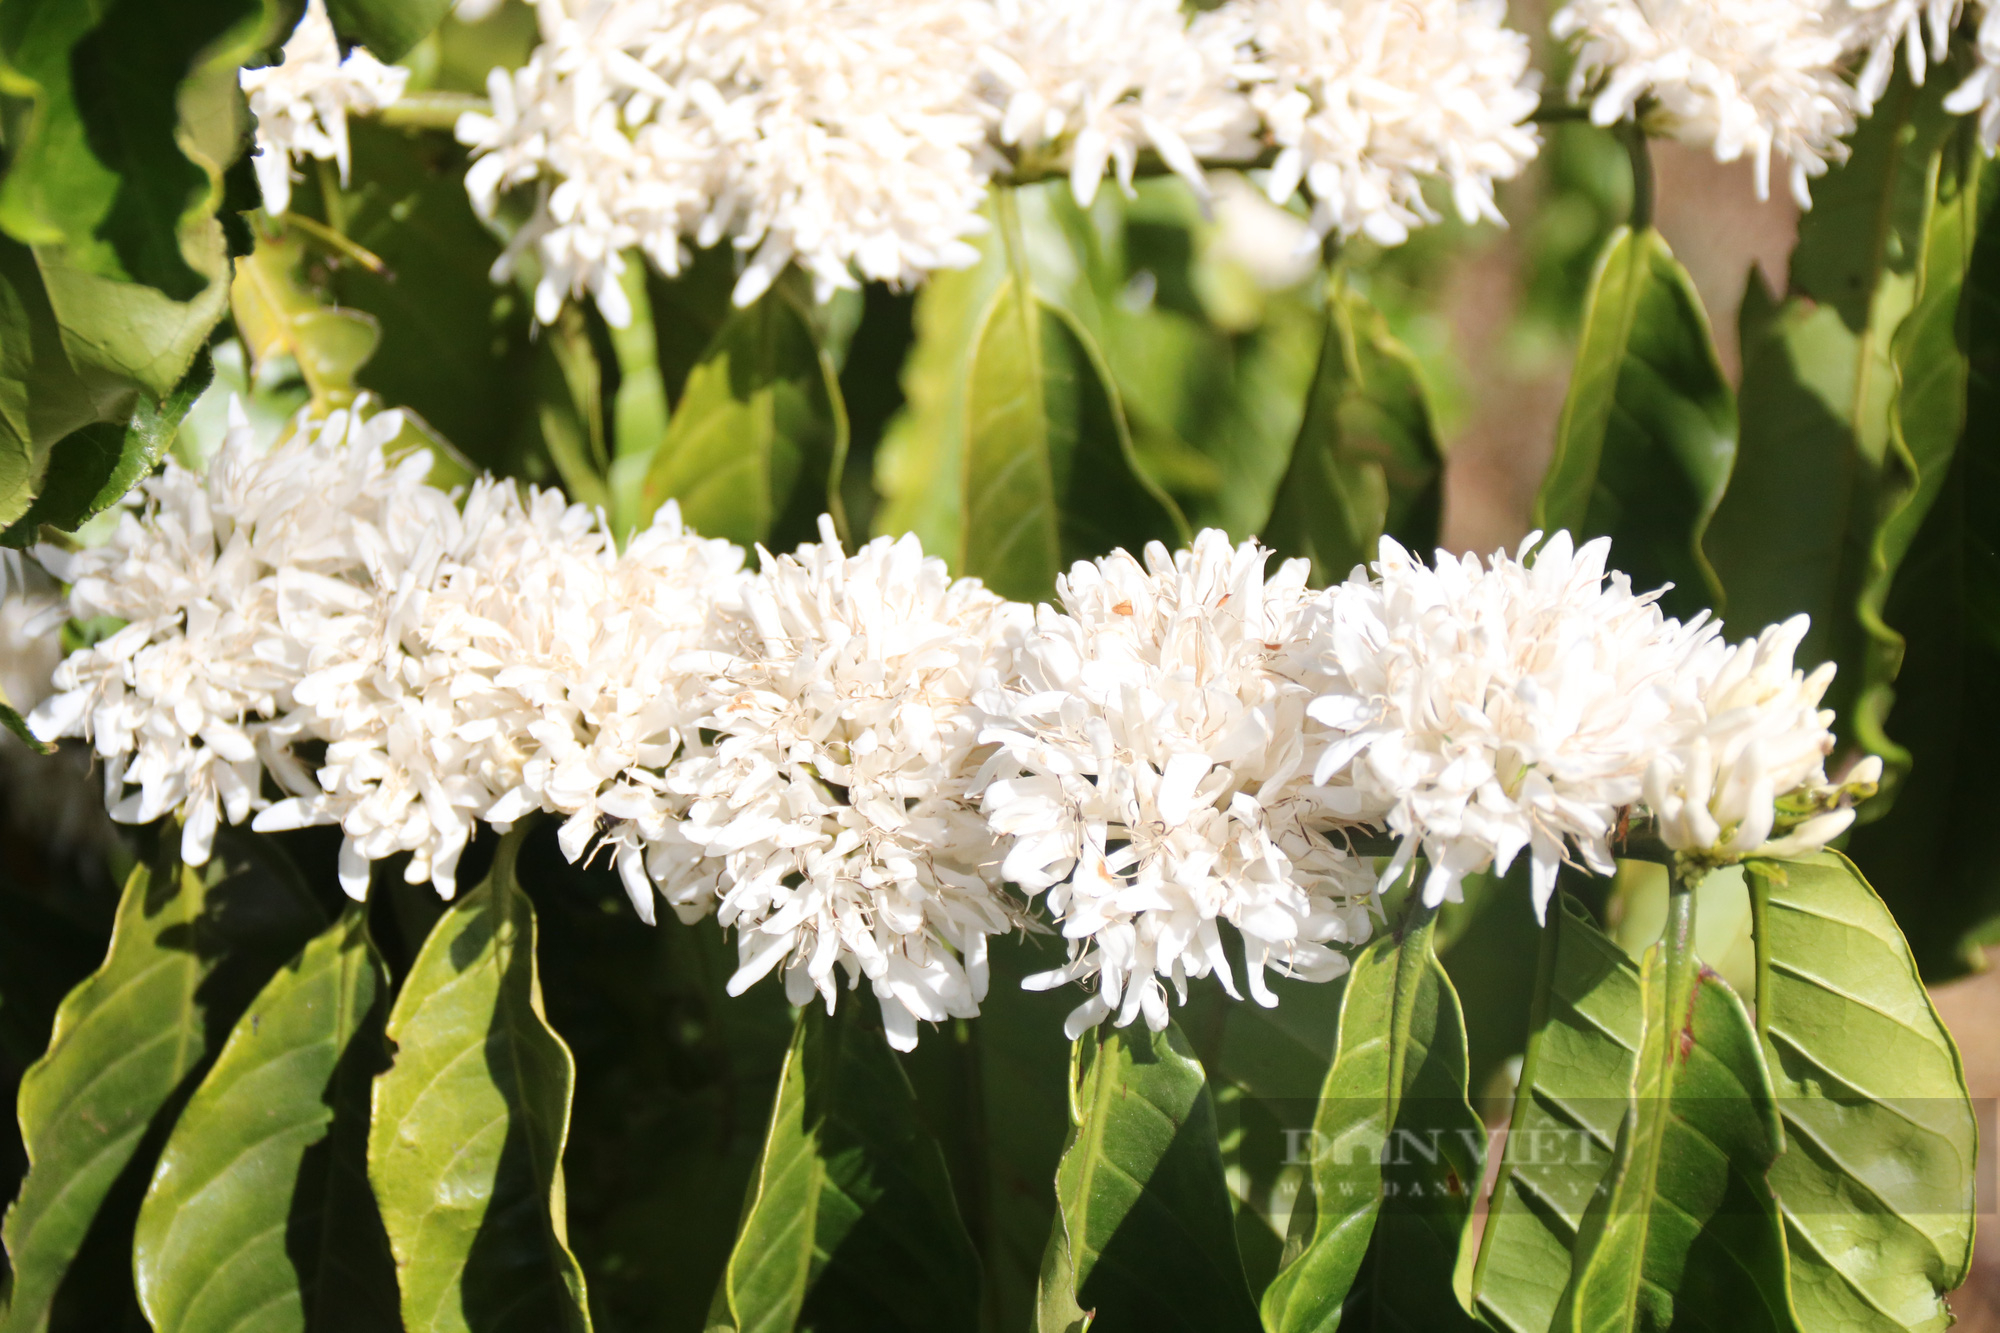 Ngắm nhìn những bông hoa cà phê nở trắng xóa giữa vùng đất Tây Nguyên - Ảnh 5.